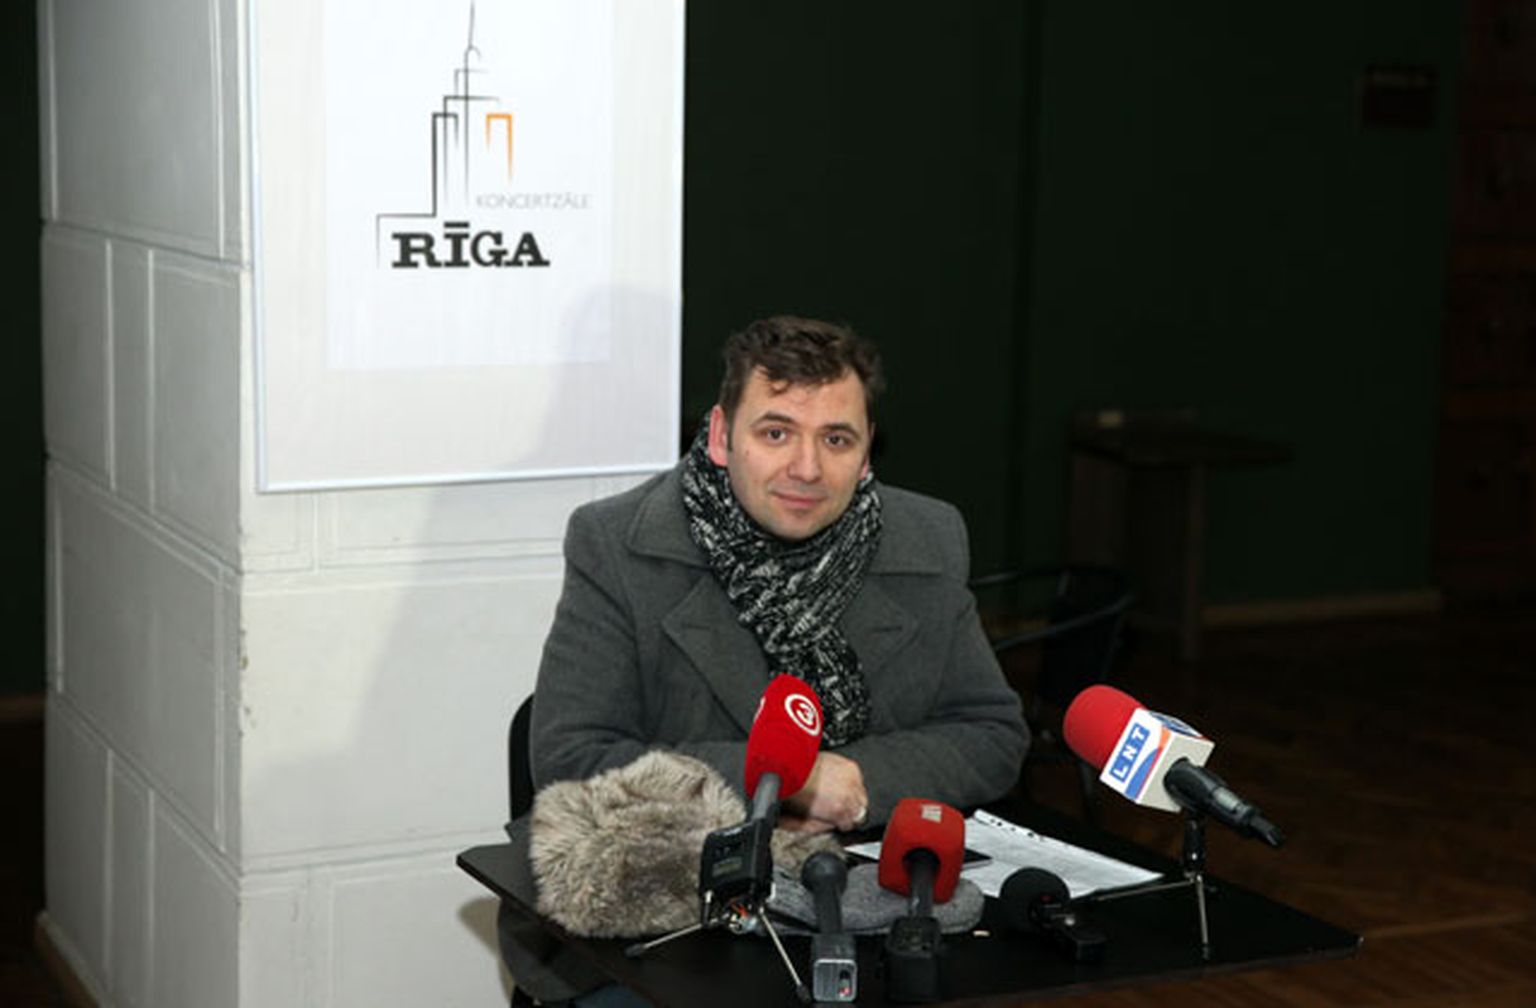 Koncertzāles "Rīga" vadītājs Juris Millers preses konferencē informē par koncertzāles turpmākajiem darbības plāniem